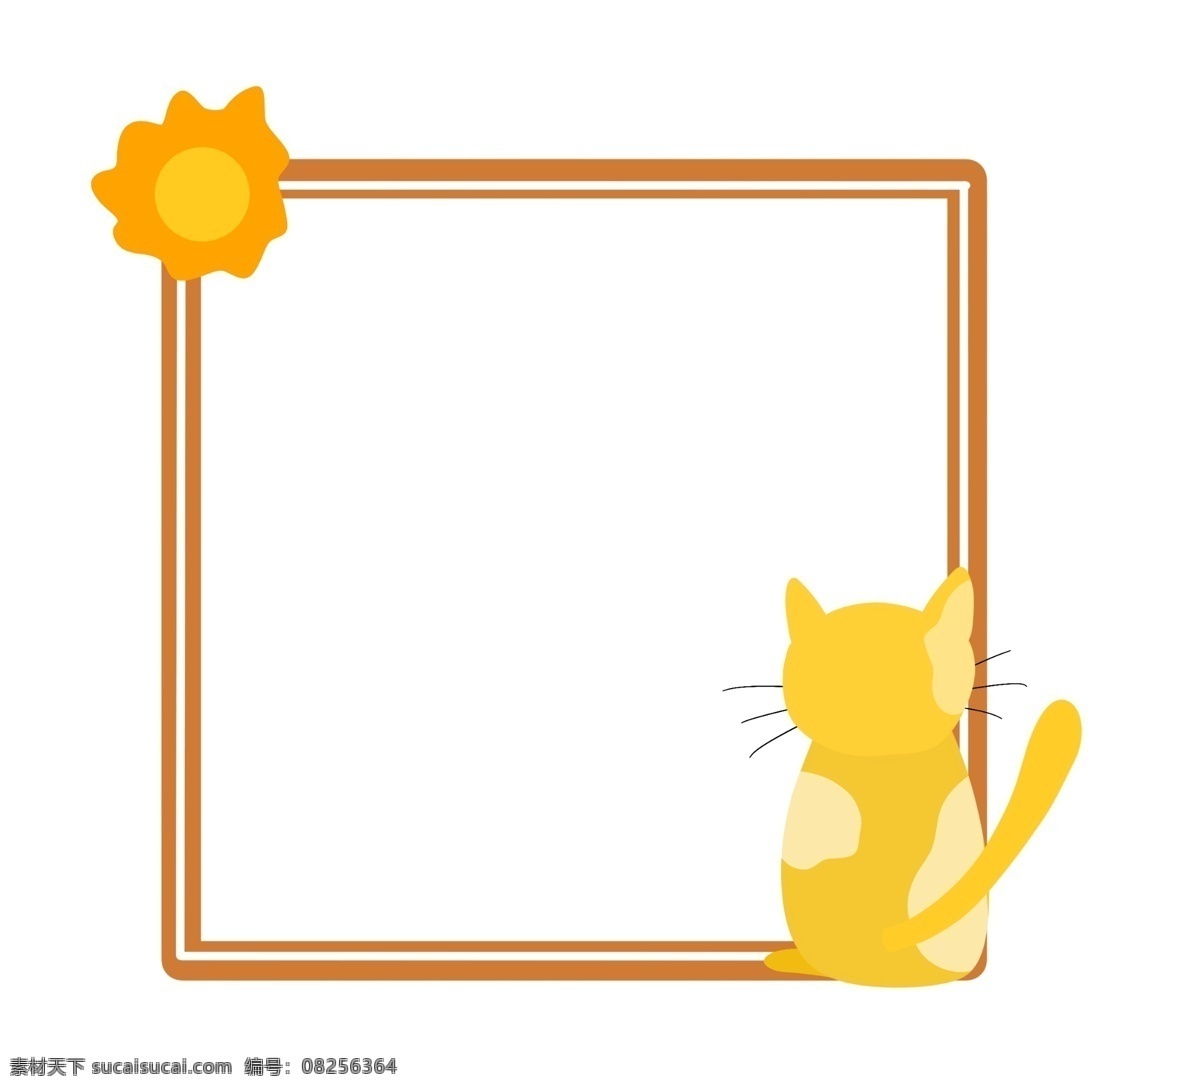 可爱 太阳 小猫 边框 小猫边框 可爱边框 太阳边框 卡通边框 卡通猫咪边框 卡通太阳 插图